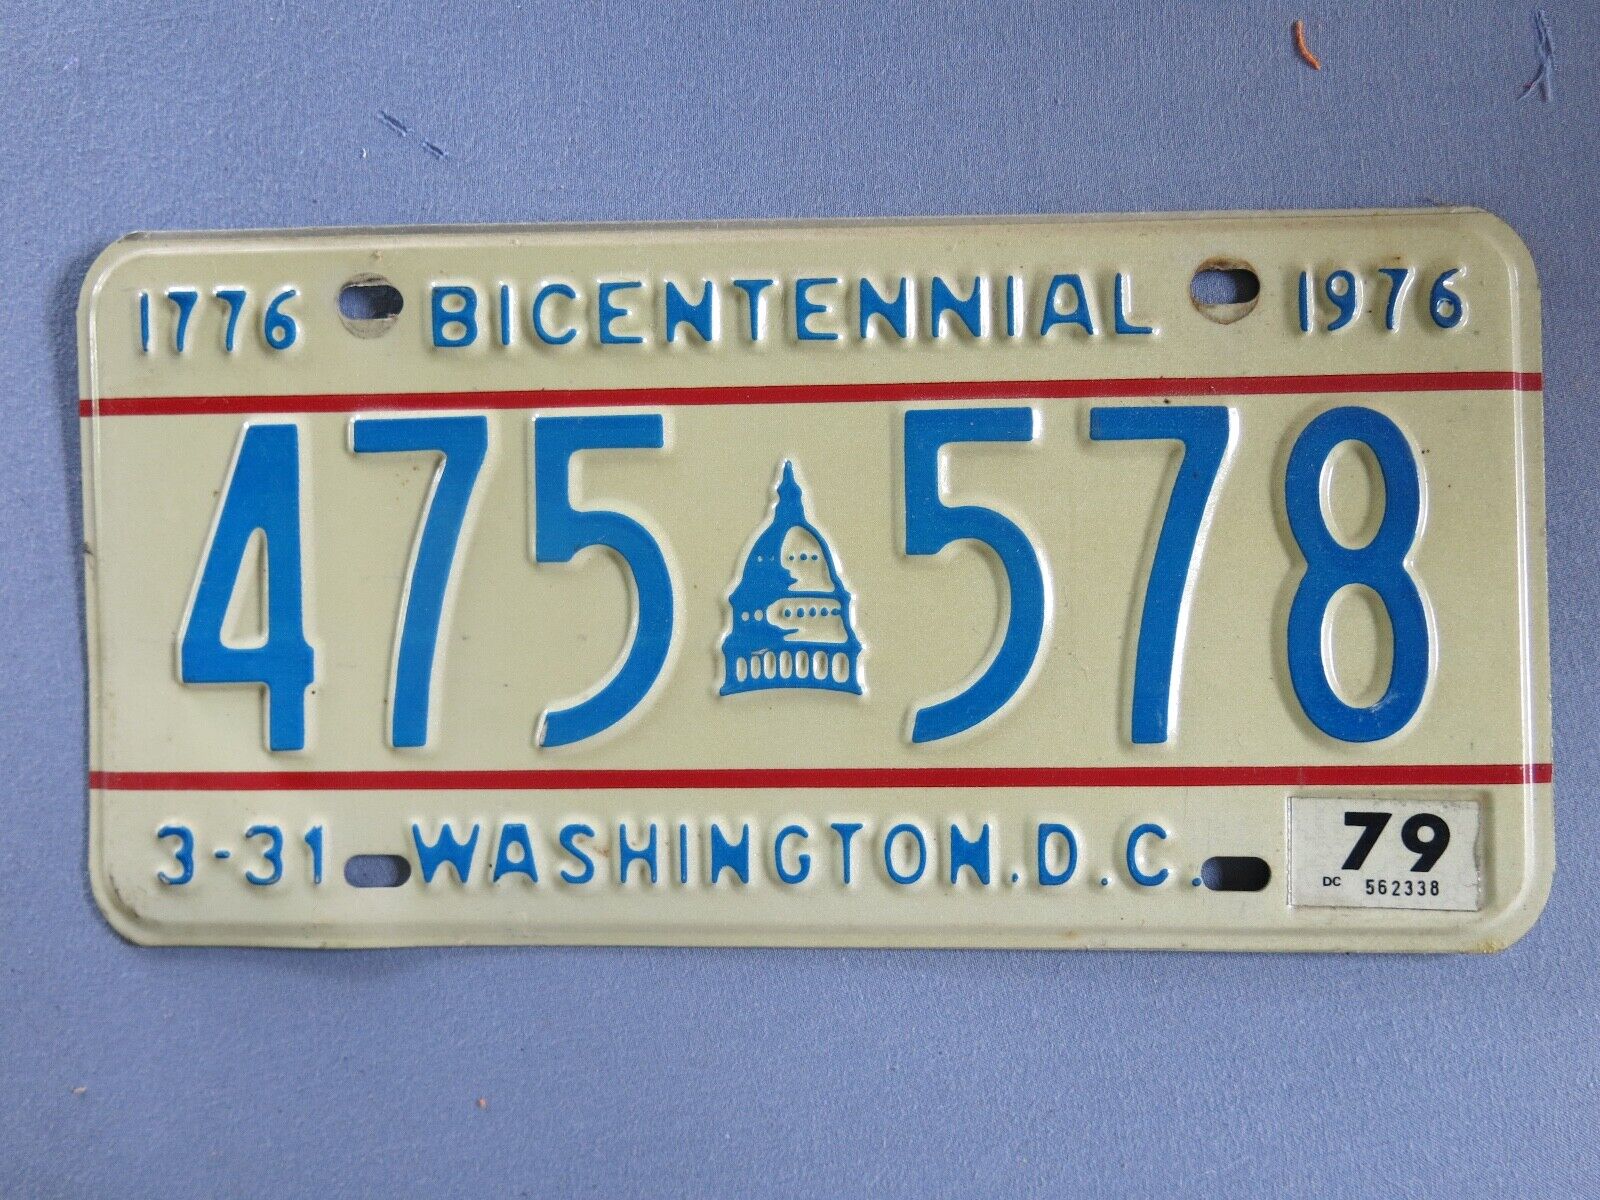 1976 BICENTENNIAL WASHINGTON DC LICENSE PLATE - 79 TAG - CLEAN